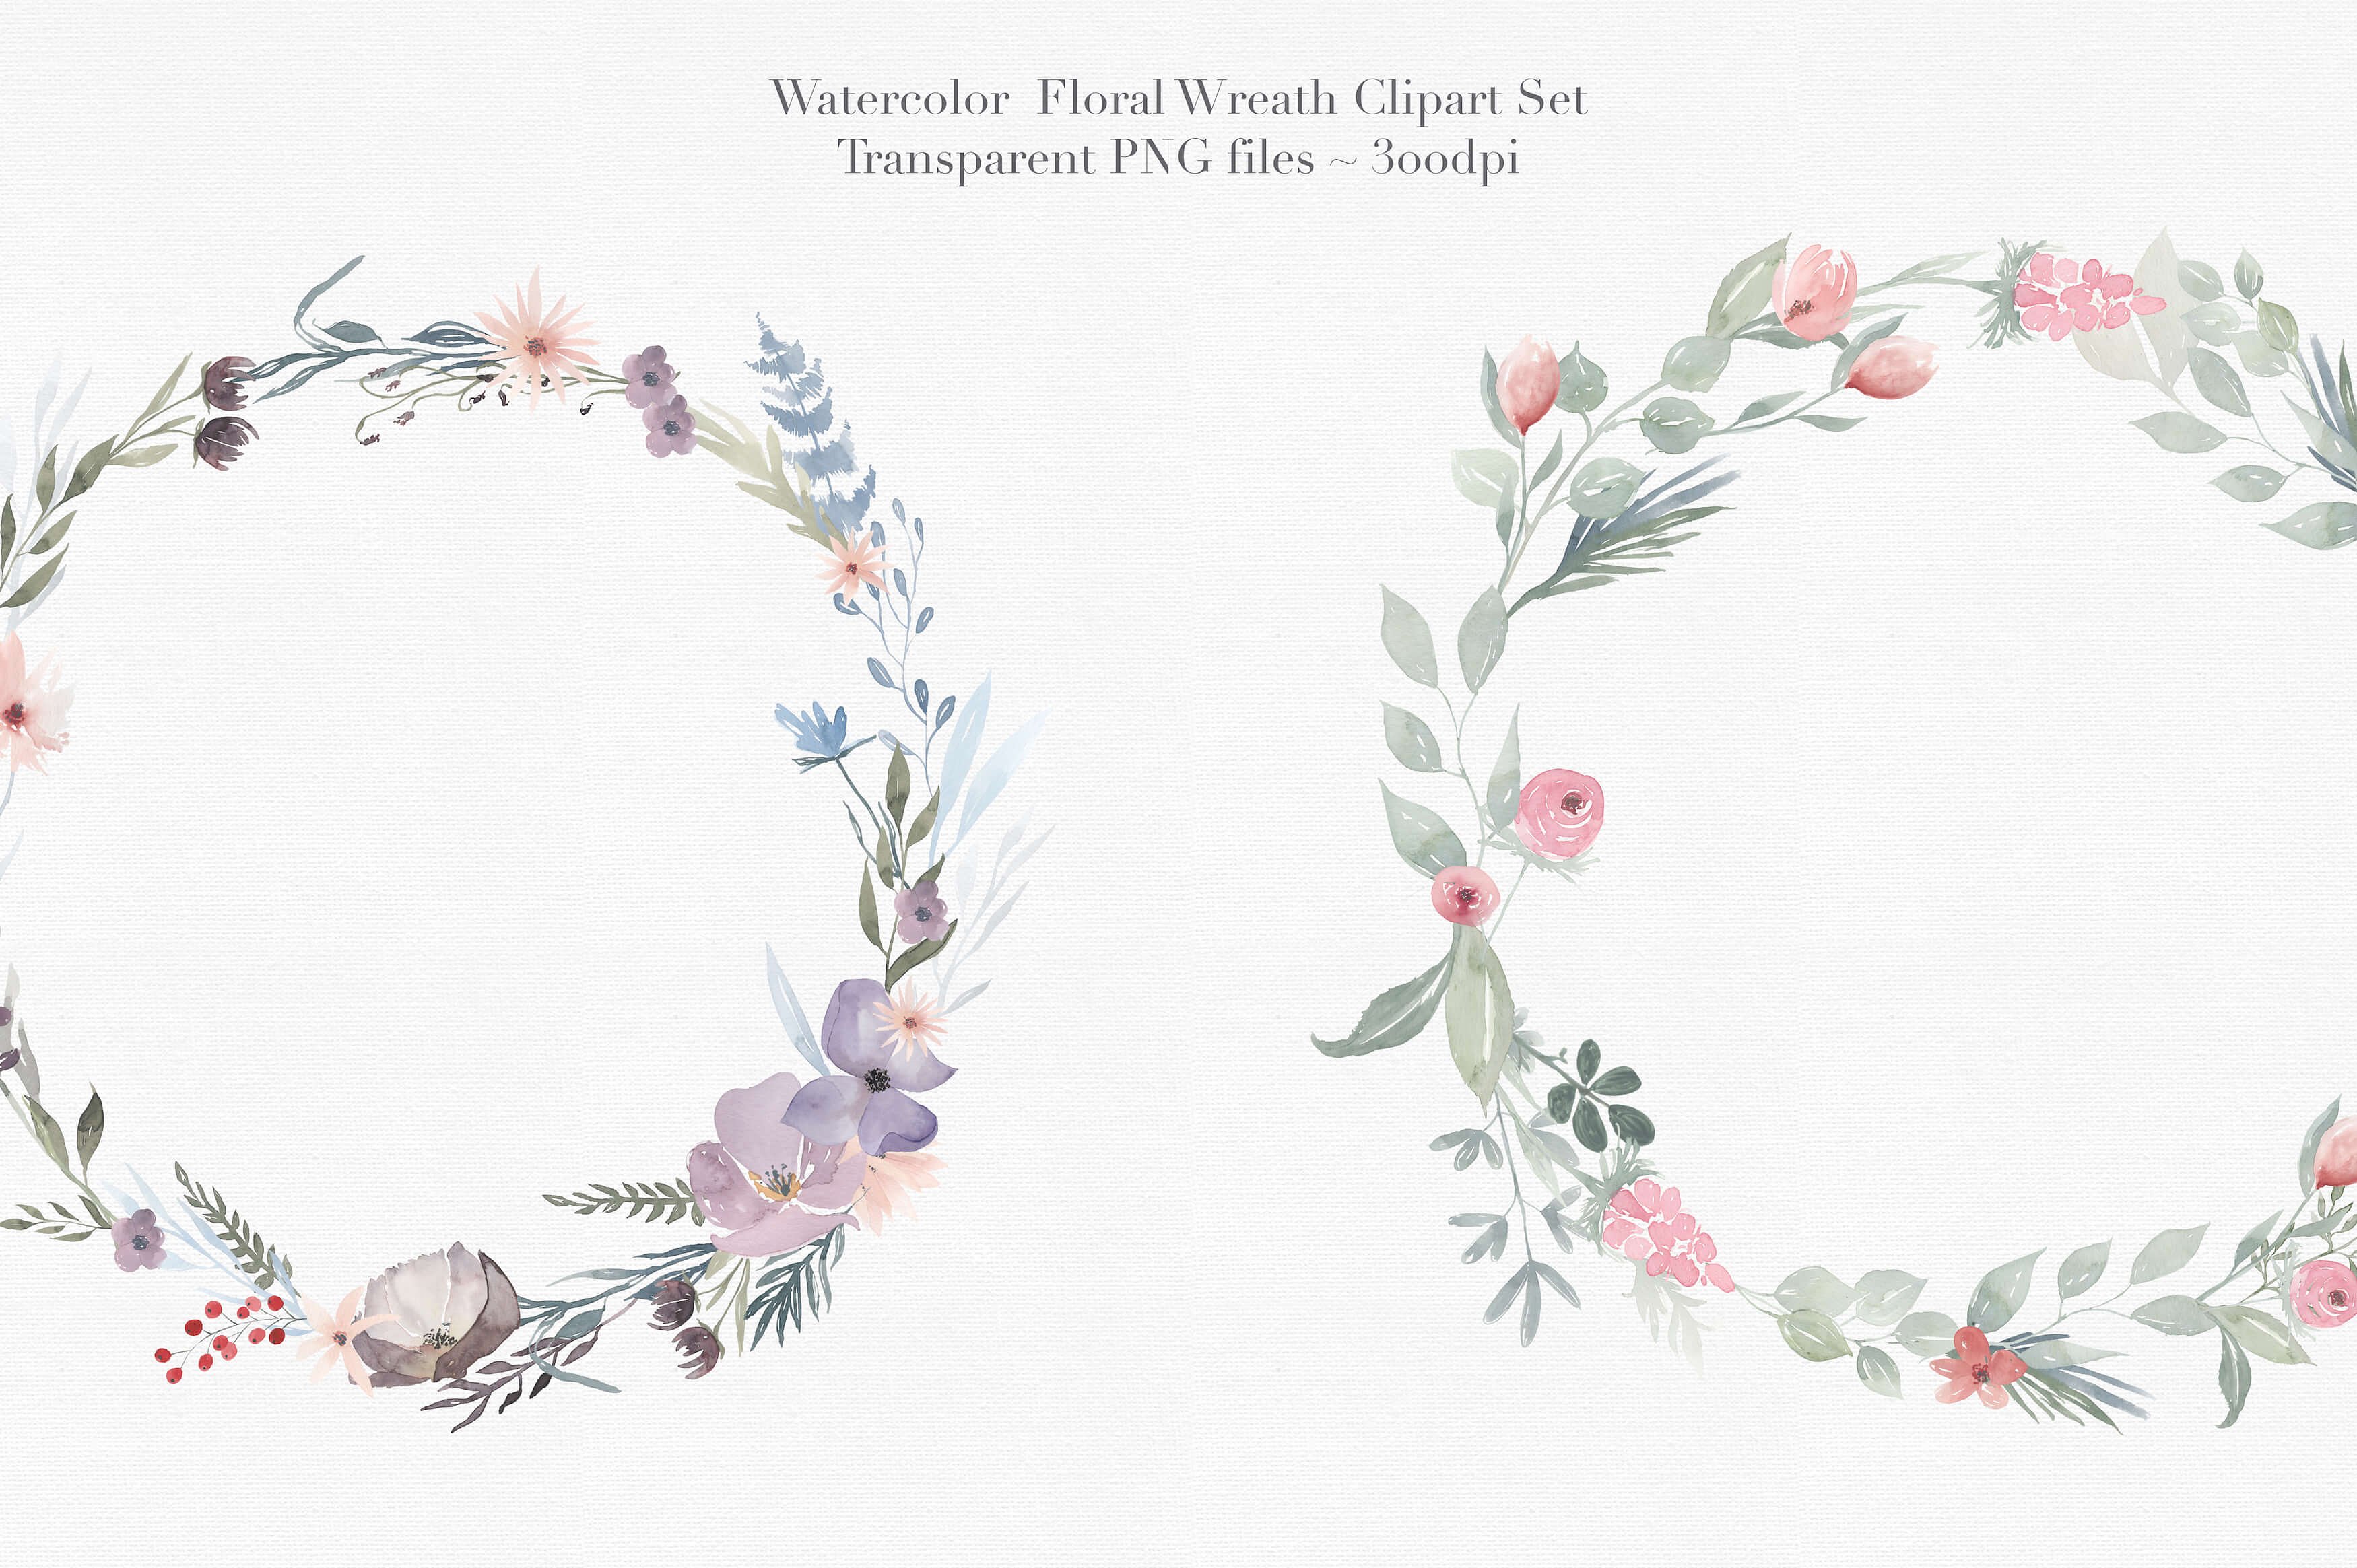 独特的手绘花卉花环剪贴画合集 Vol.3 Watercolor Floral Wreaths Vol.3插图(1)